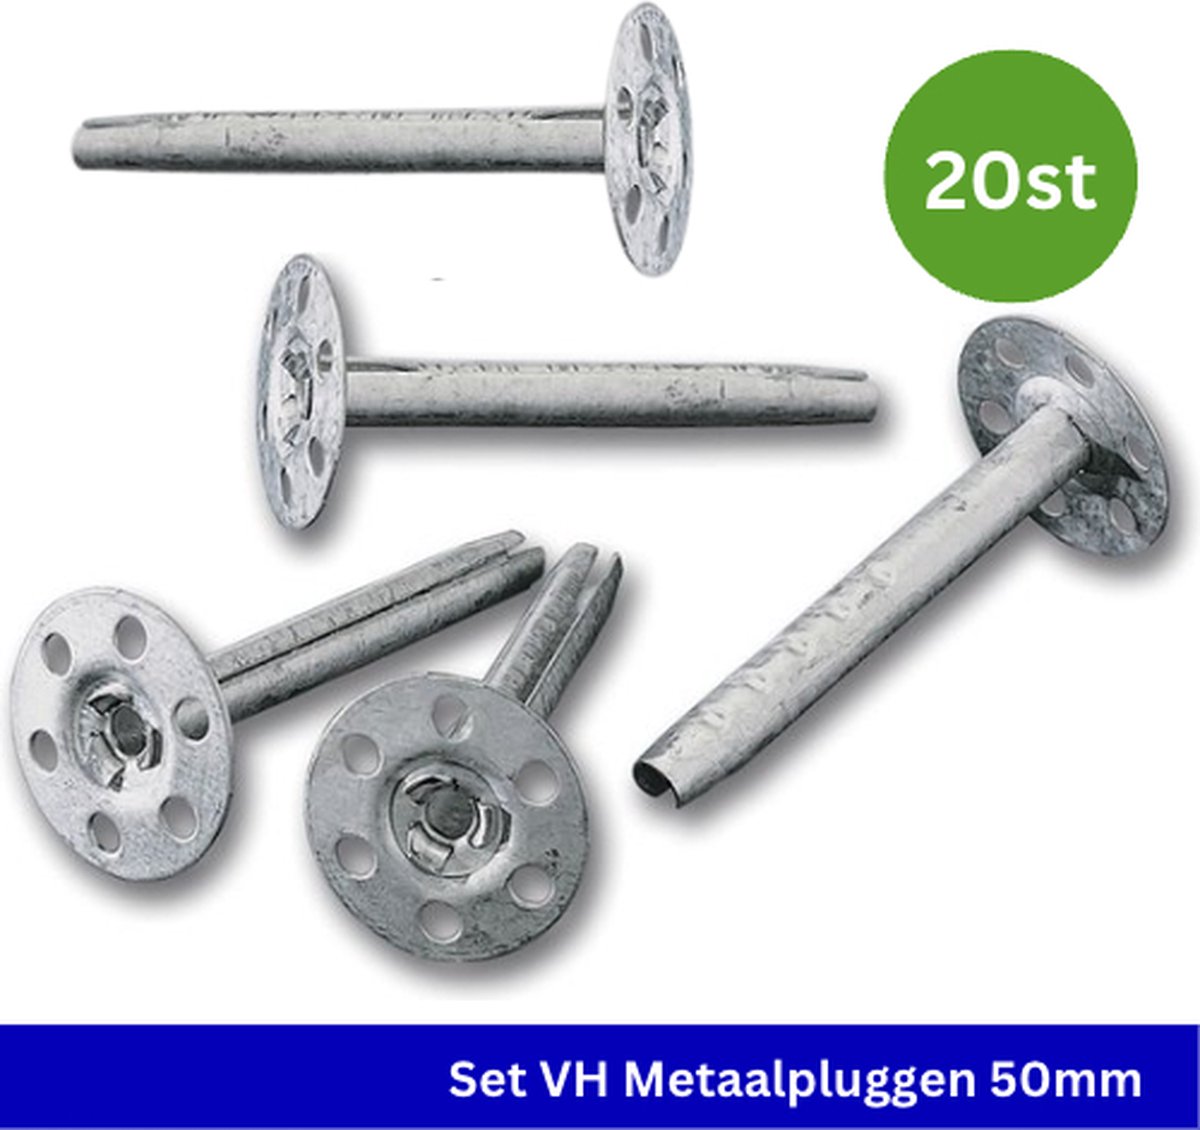 VH metaalplug - Slagplug - 50 mm lengte - Rozet van 35 mm - 20 stuks